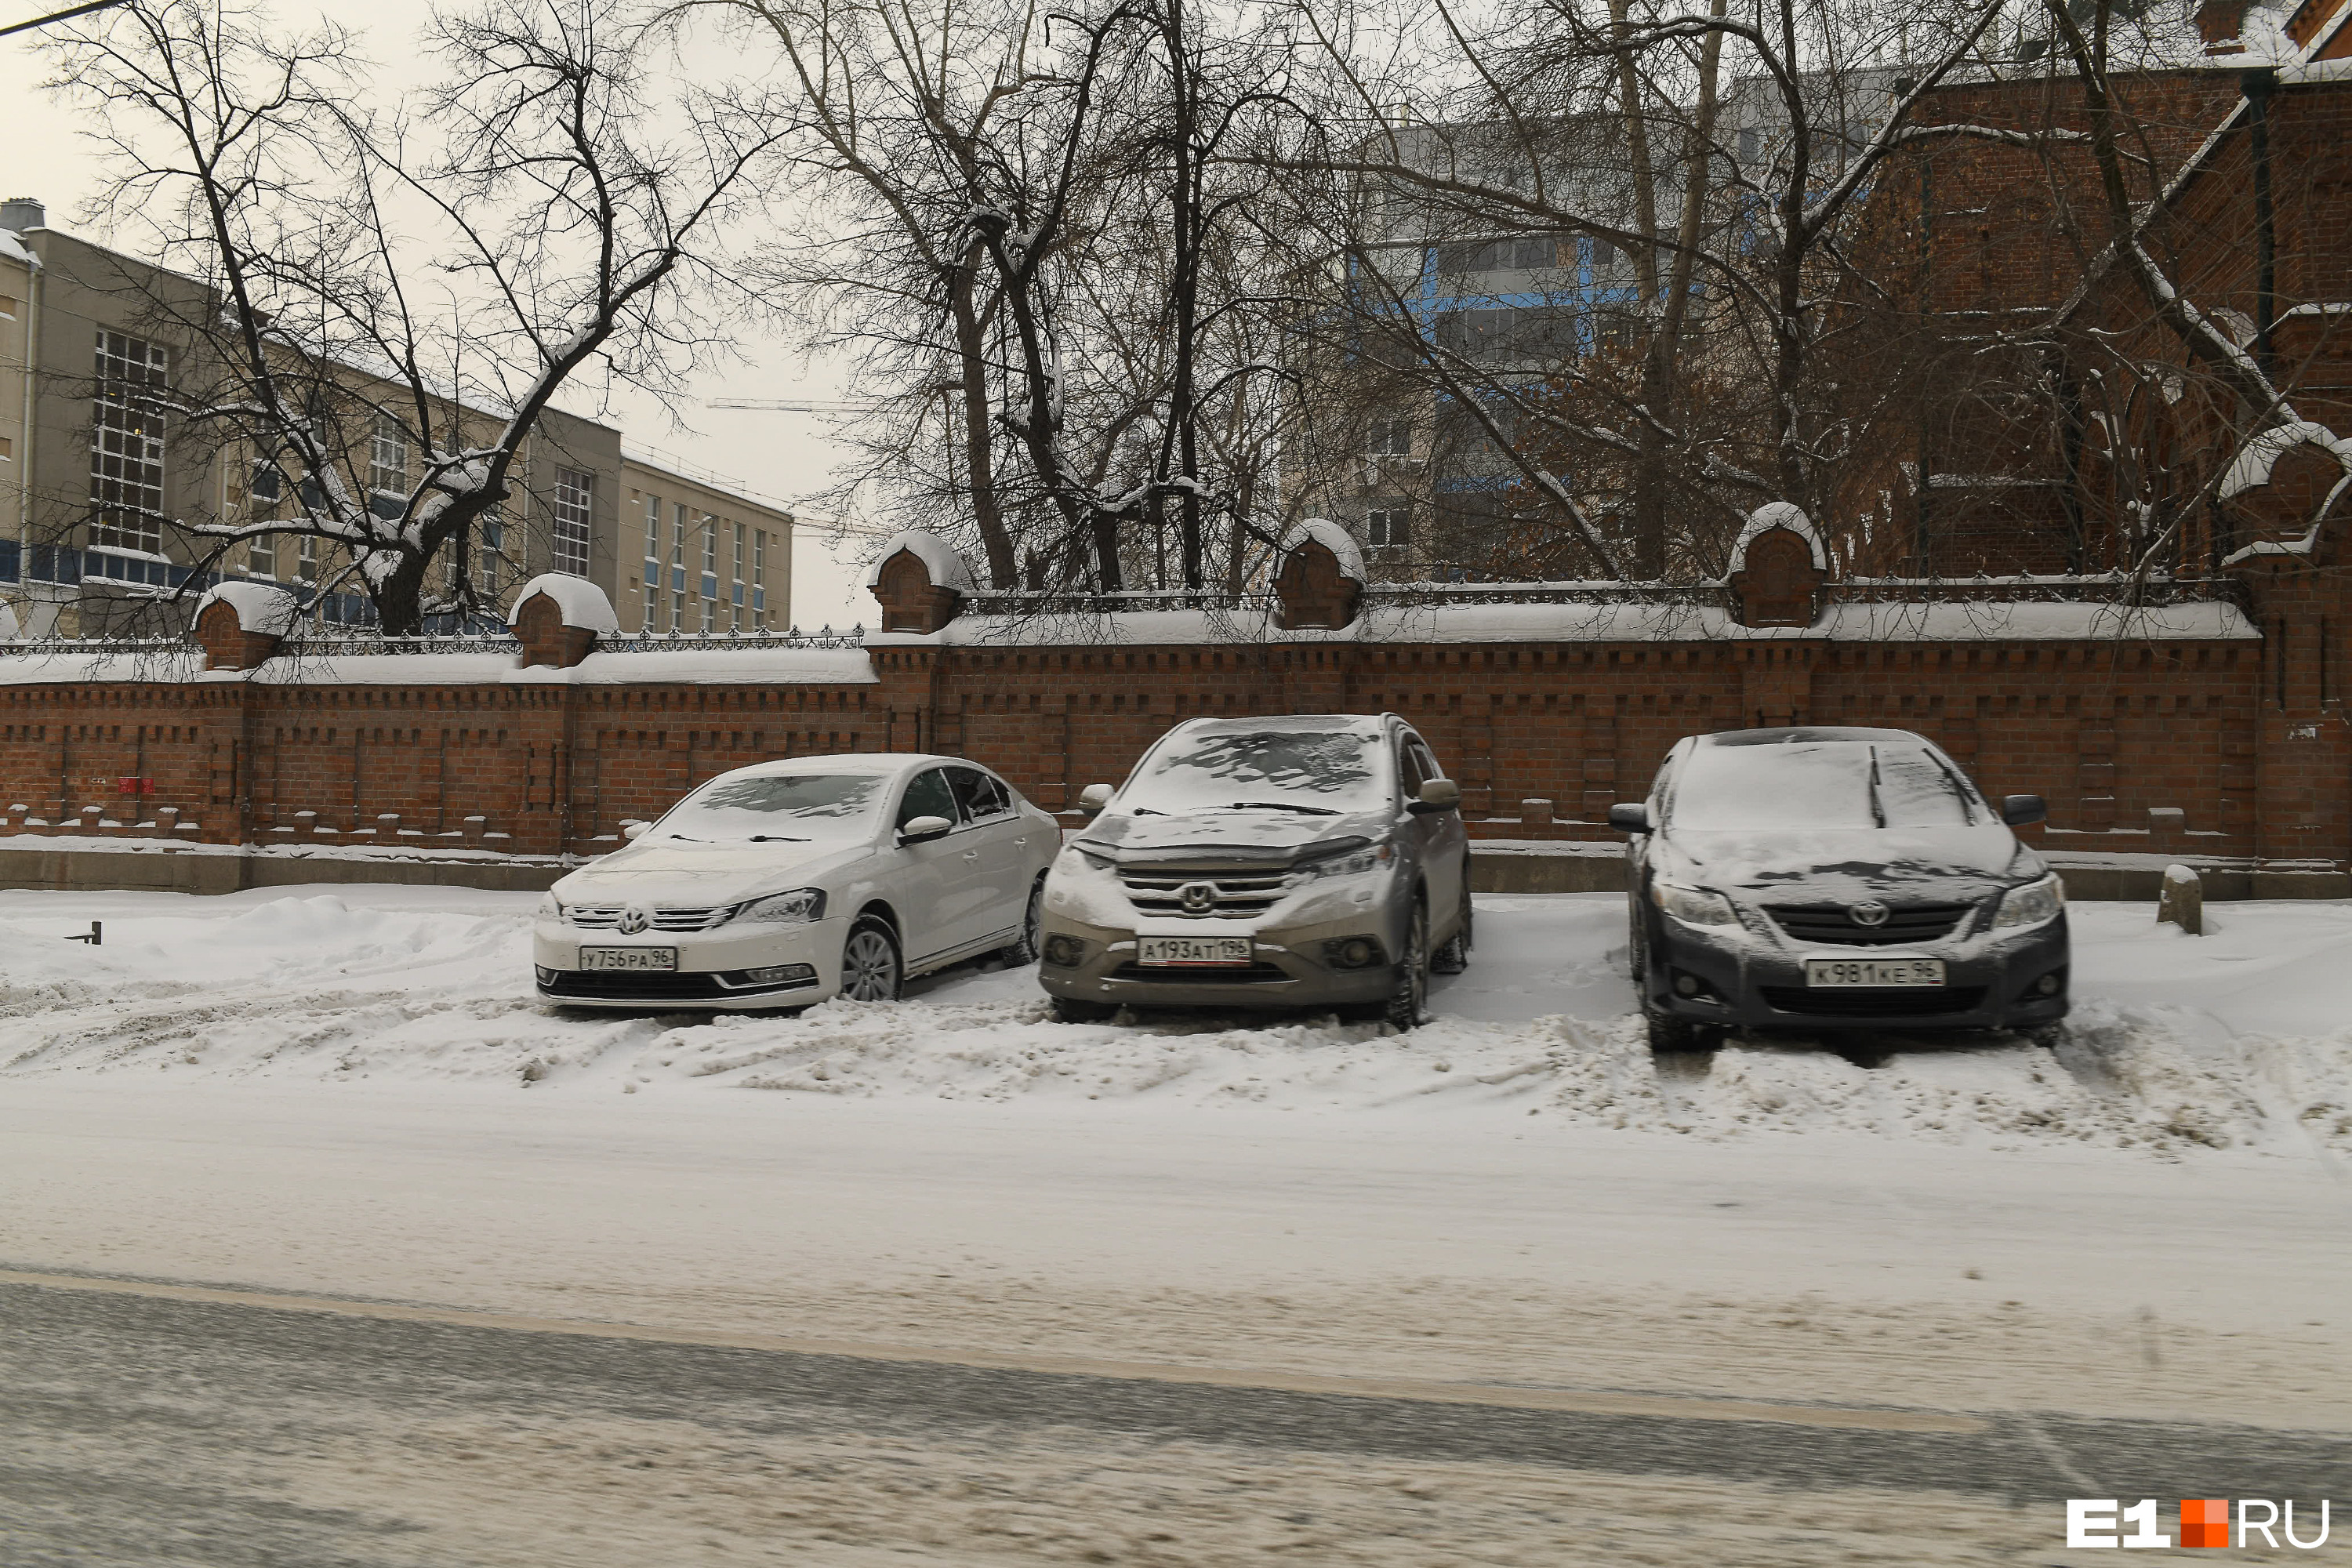 Там, где припаркованы машины, убрать снег невозможно